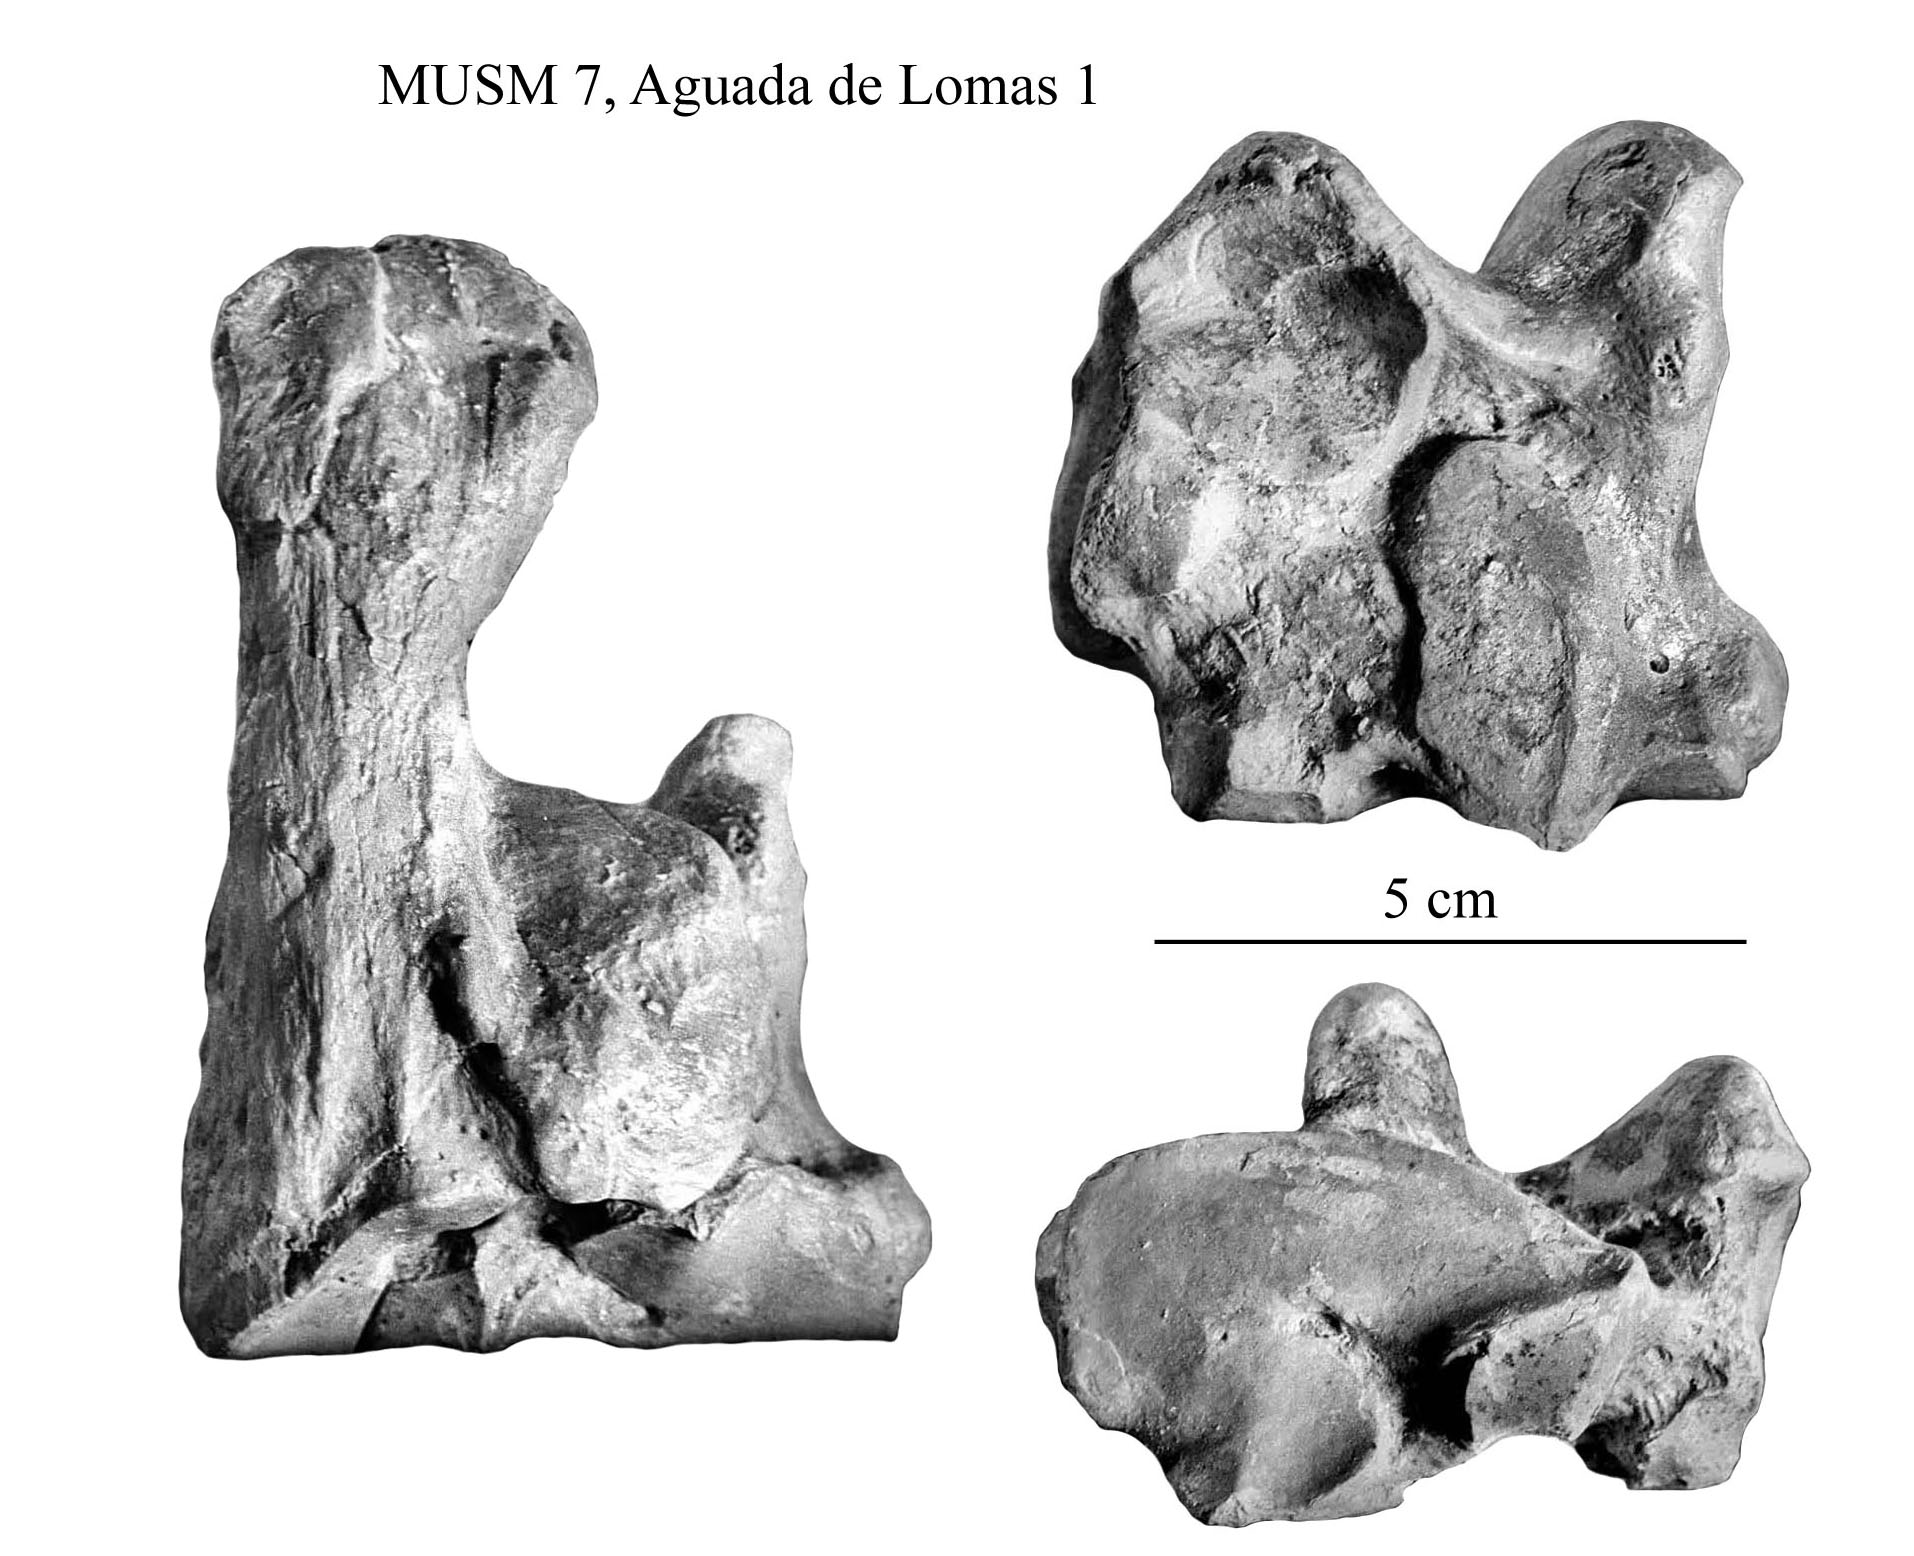 Möbelum Kommode Luxus Equus Amerhipus Insulatus From Peru Musm 7 Cranium and